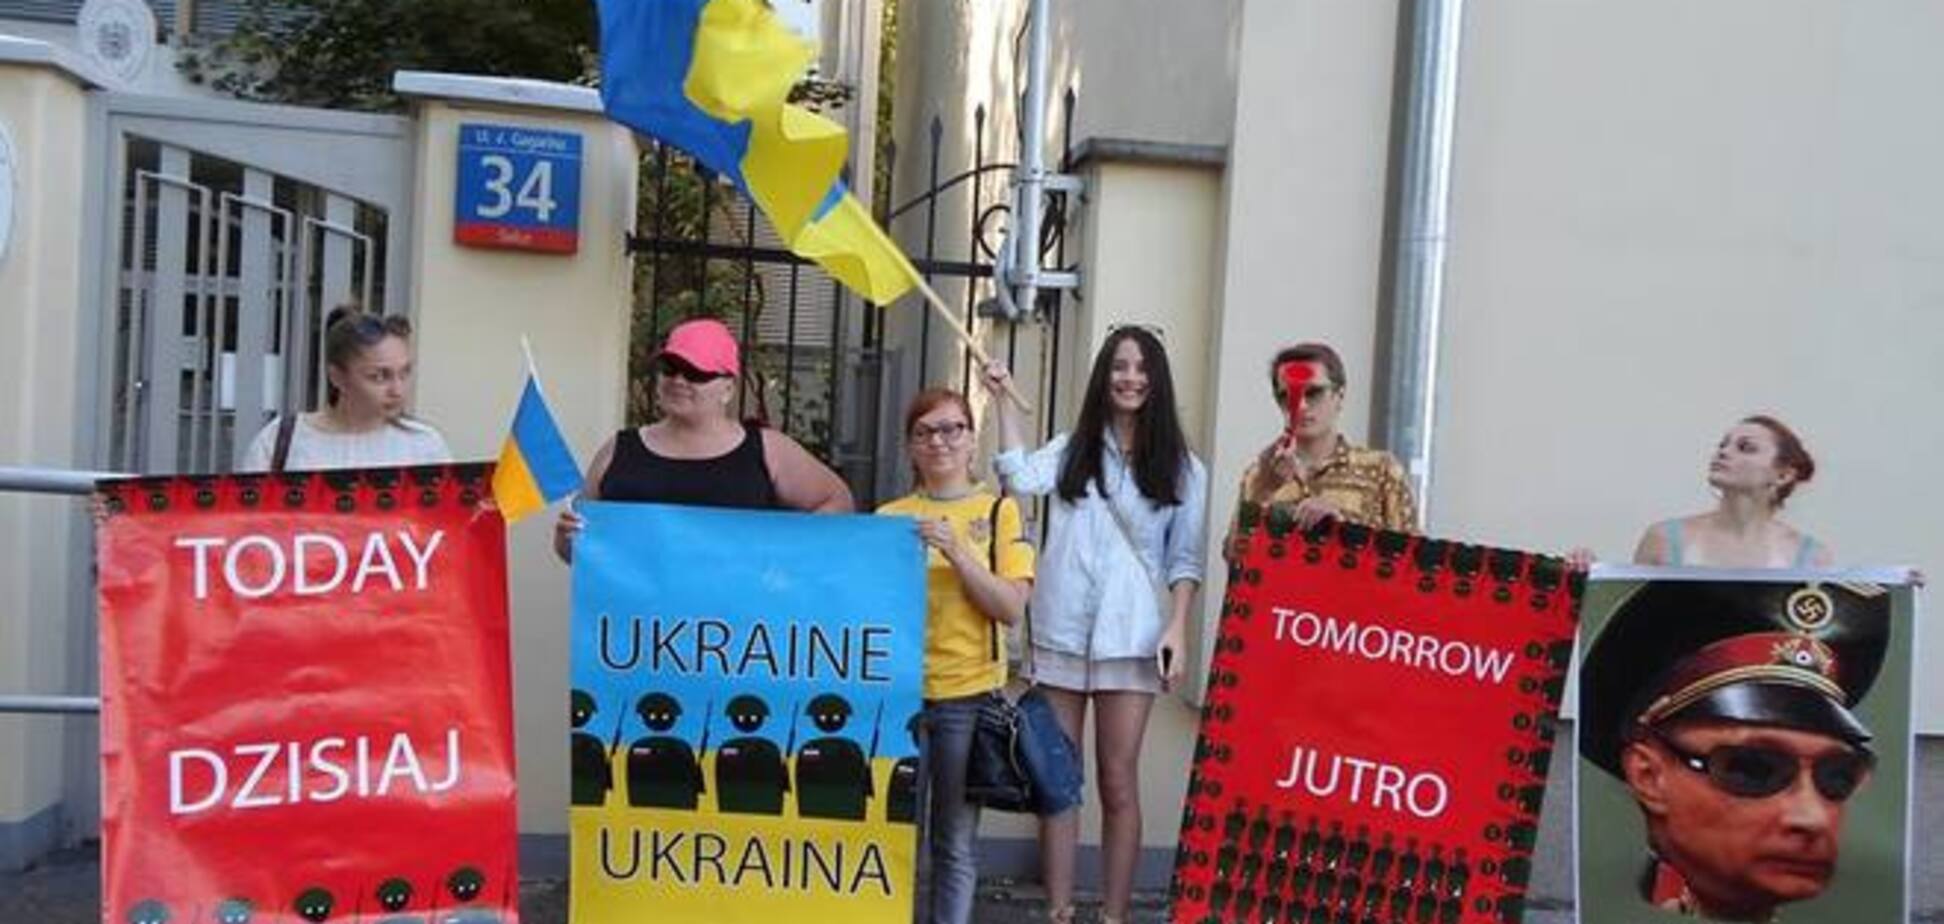 Австрийское посольство в Варшаве пикетировали за визит Путина 